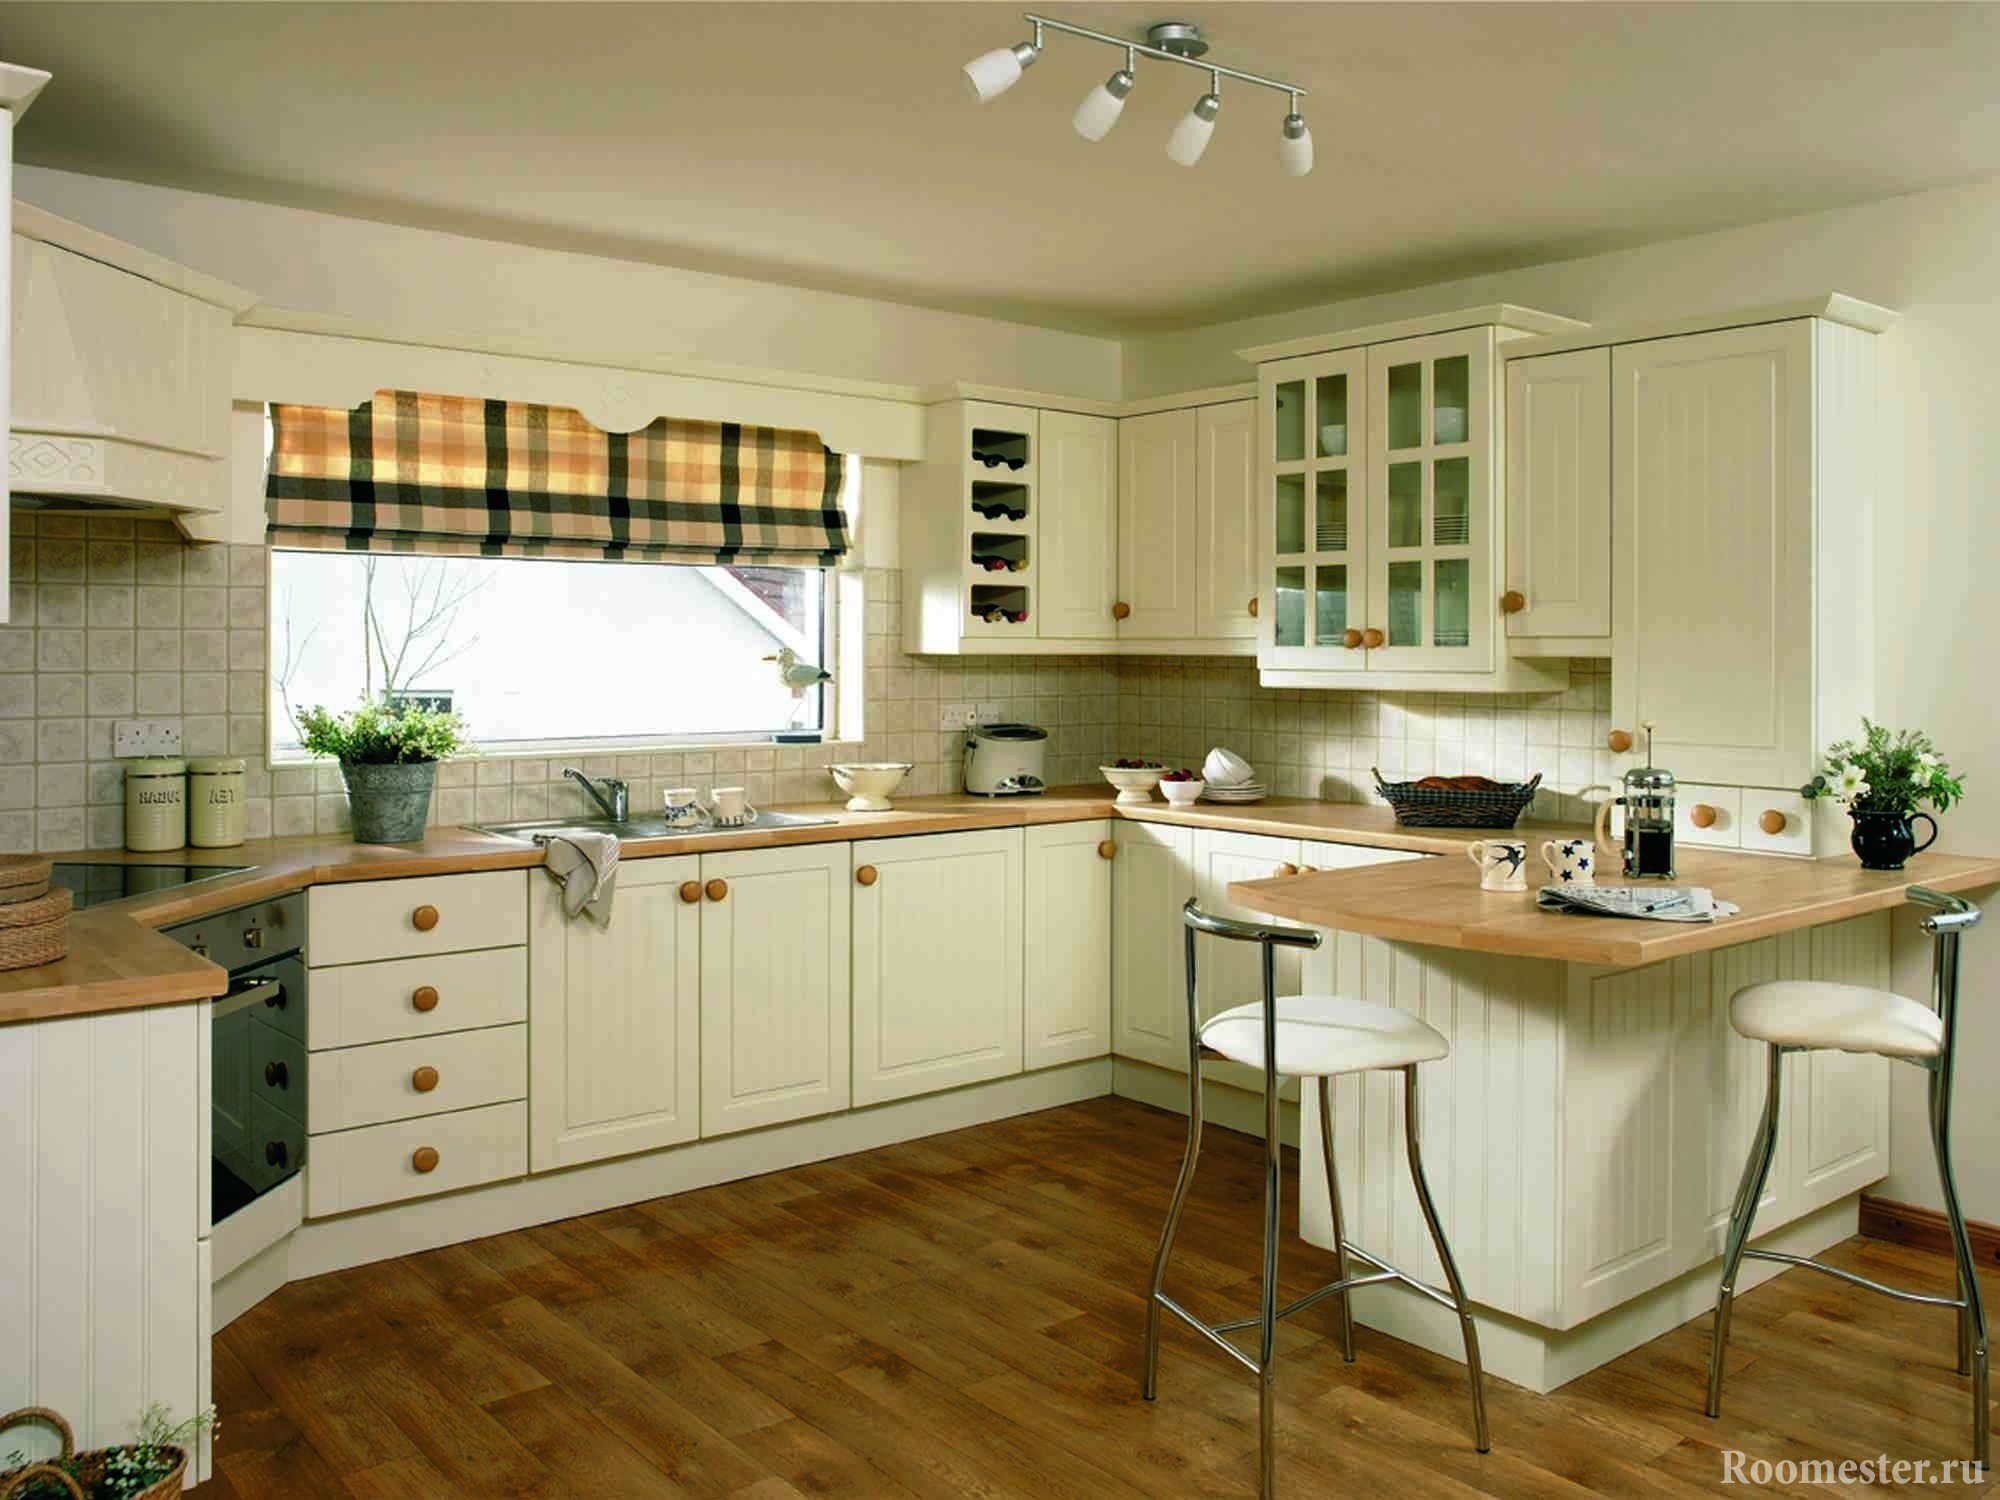 Дизайн кухни с окном - советы по оформлению интерьера +60 фото